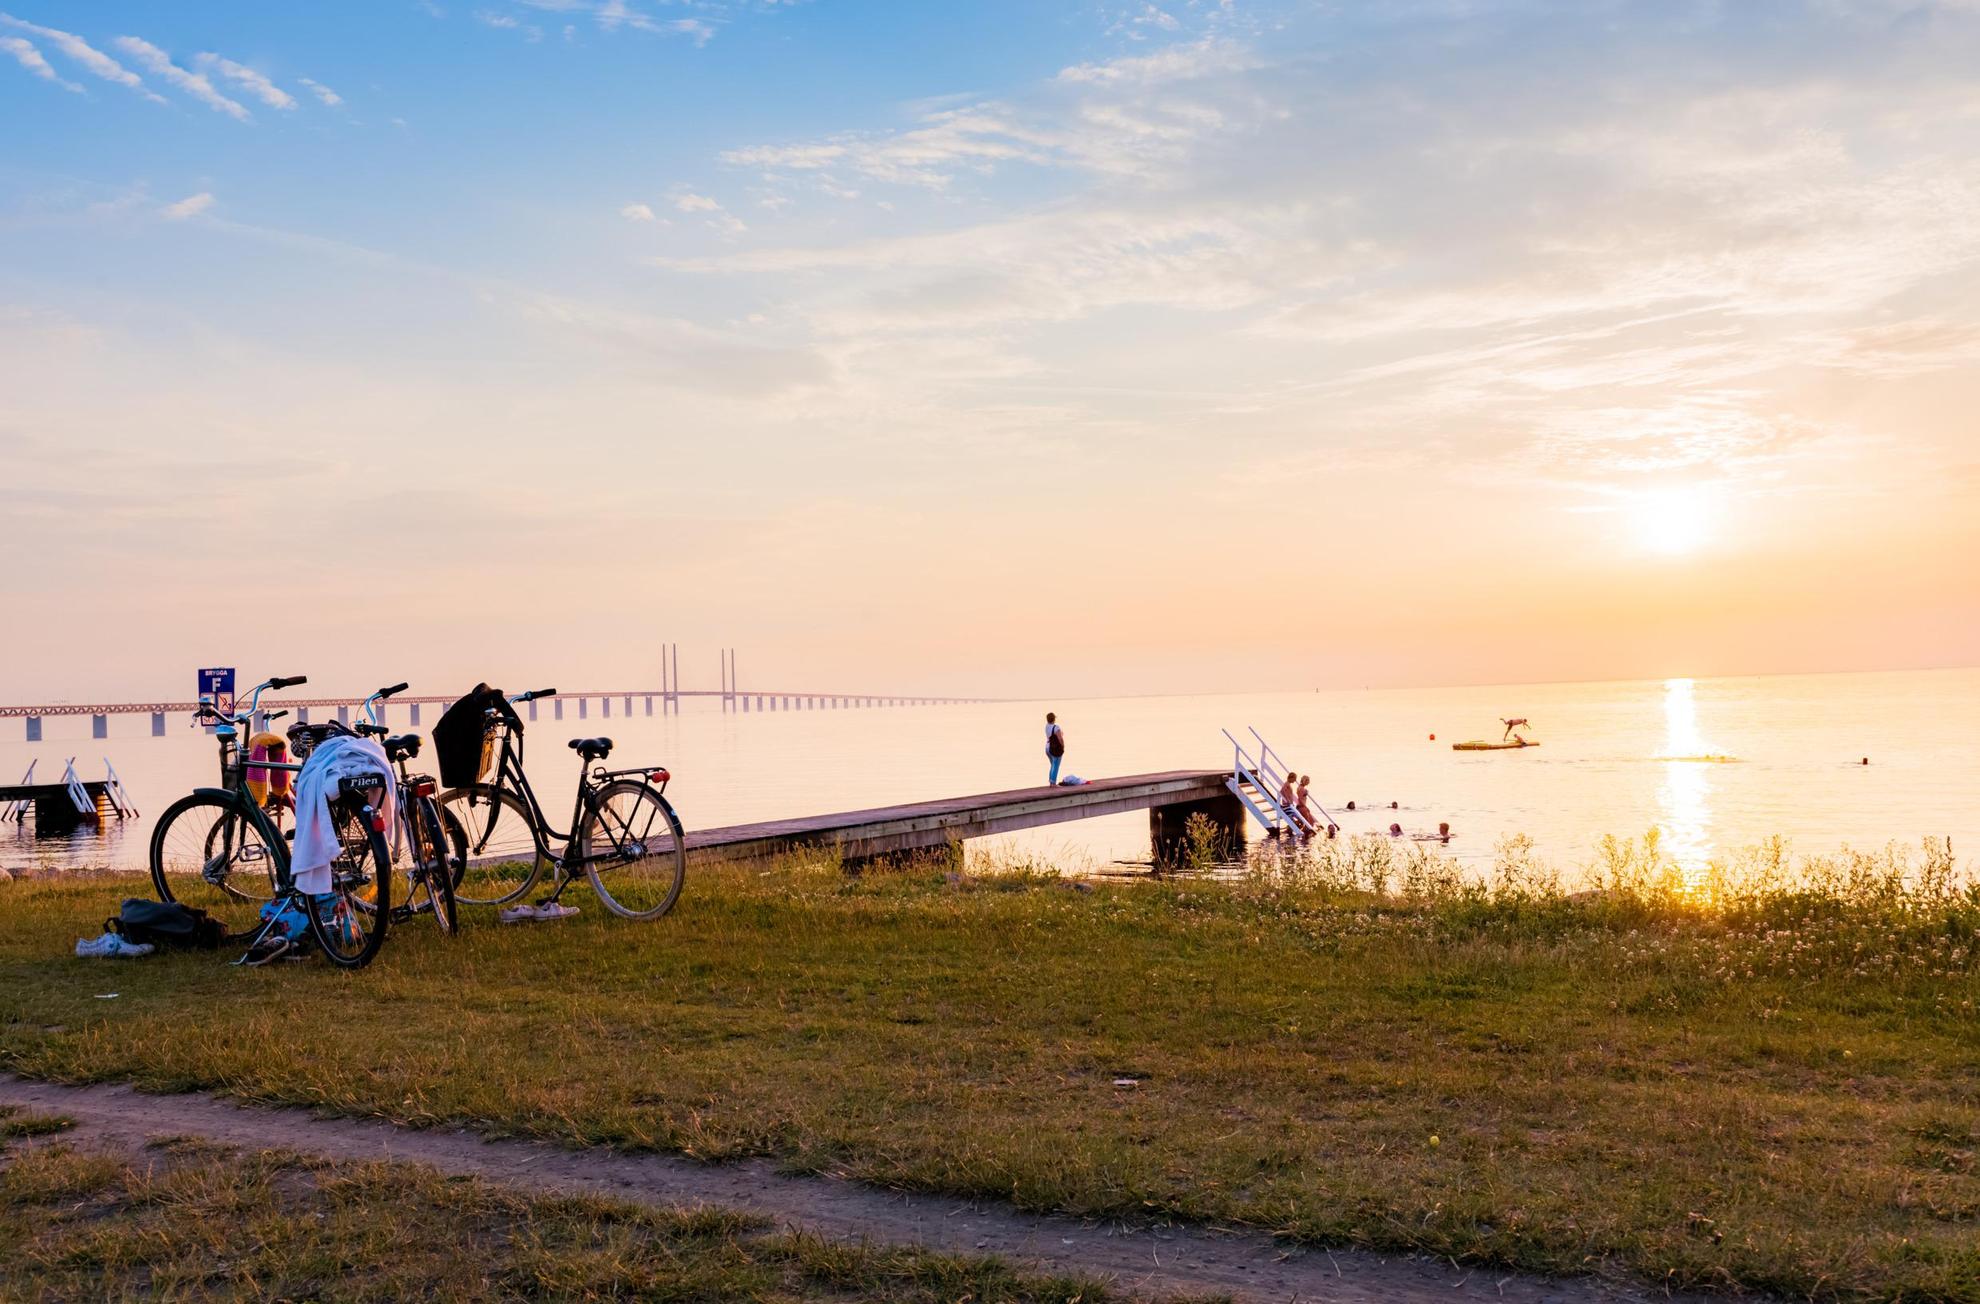 Zonsondergang boven een strand met een steiger. Op het gras boven het strand staan twee fietsen geparkeerd en meerdere mensen zwemmen in de zee. De Sontbrug op de achtergrond.